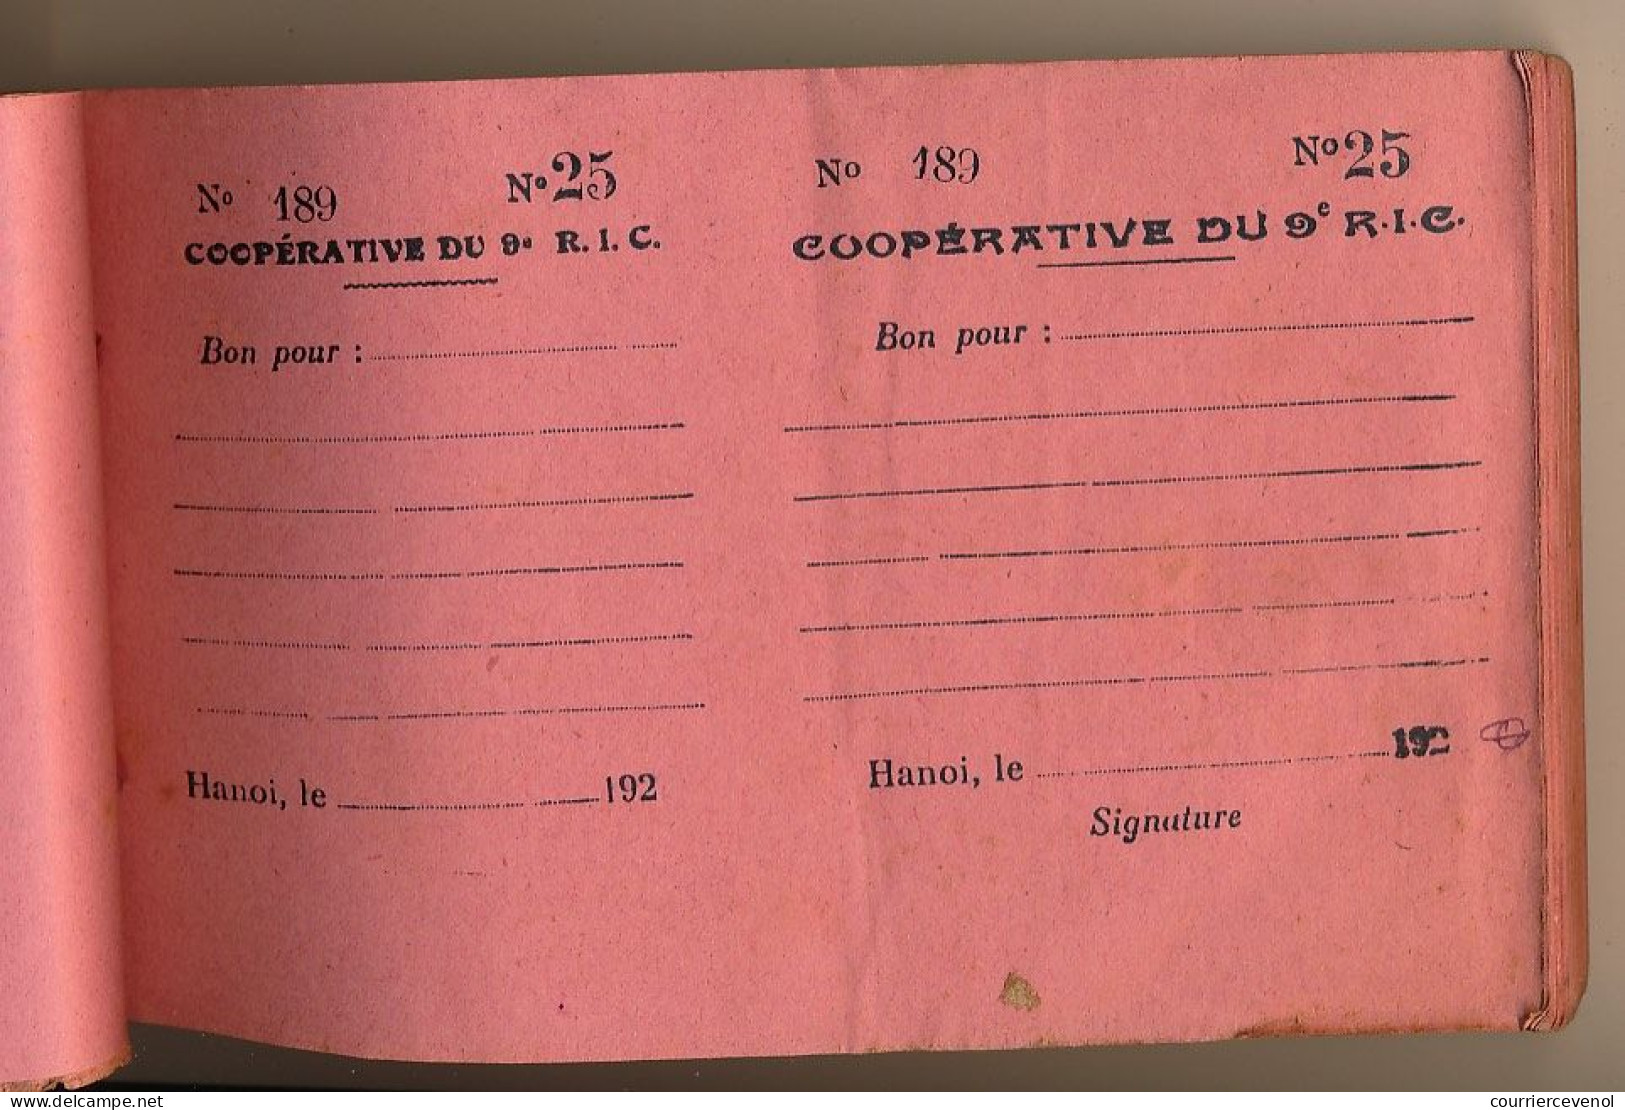 Livret individuel - Troupes Coloniales - HANOI (Tonkin) + Carnet de Prêt Coopérative 9eme R.I.C + Congé Libérable - 1927